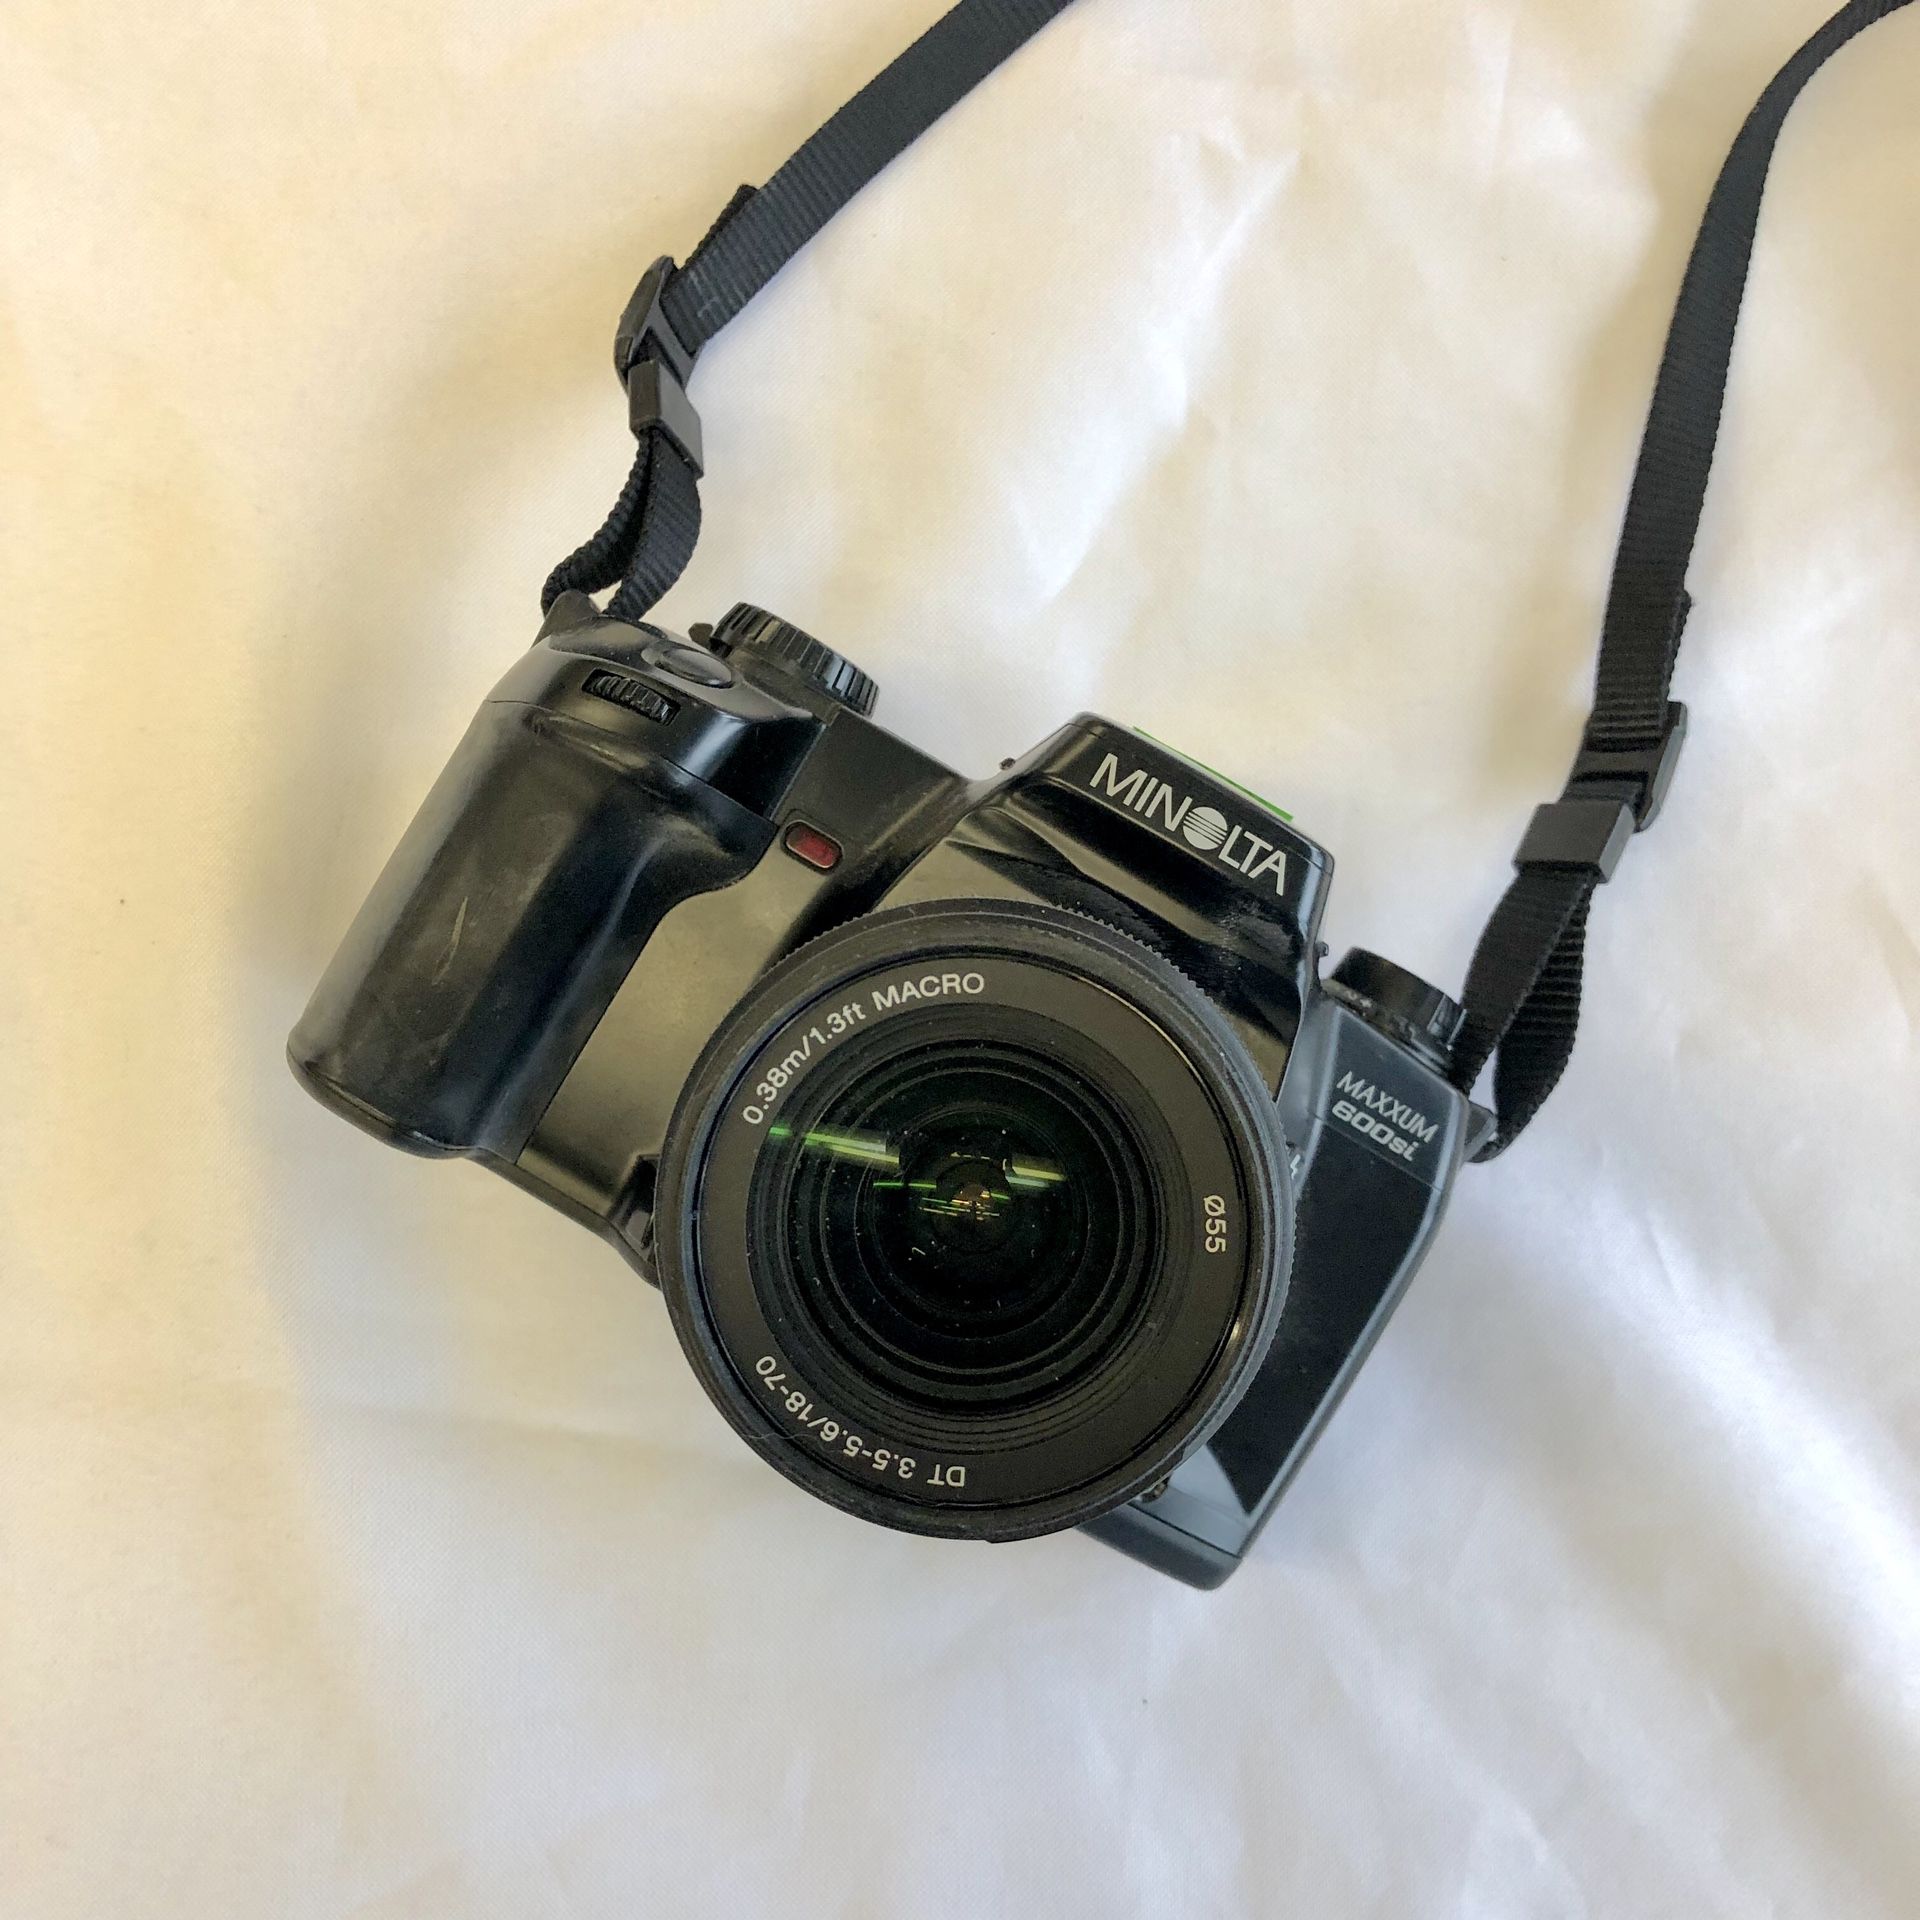 Minolta Maxxum 600si Film Camera with Sony Macro Lens